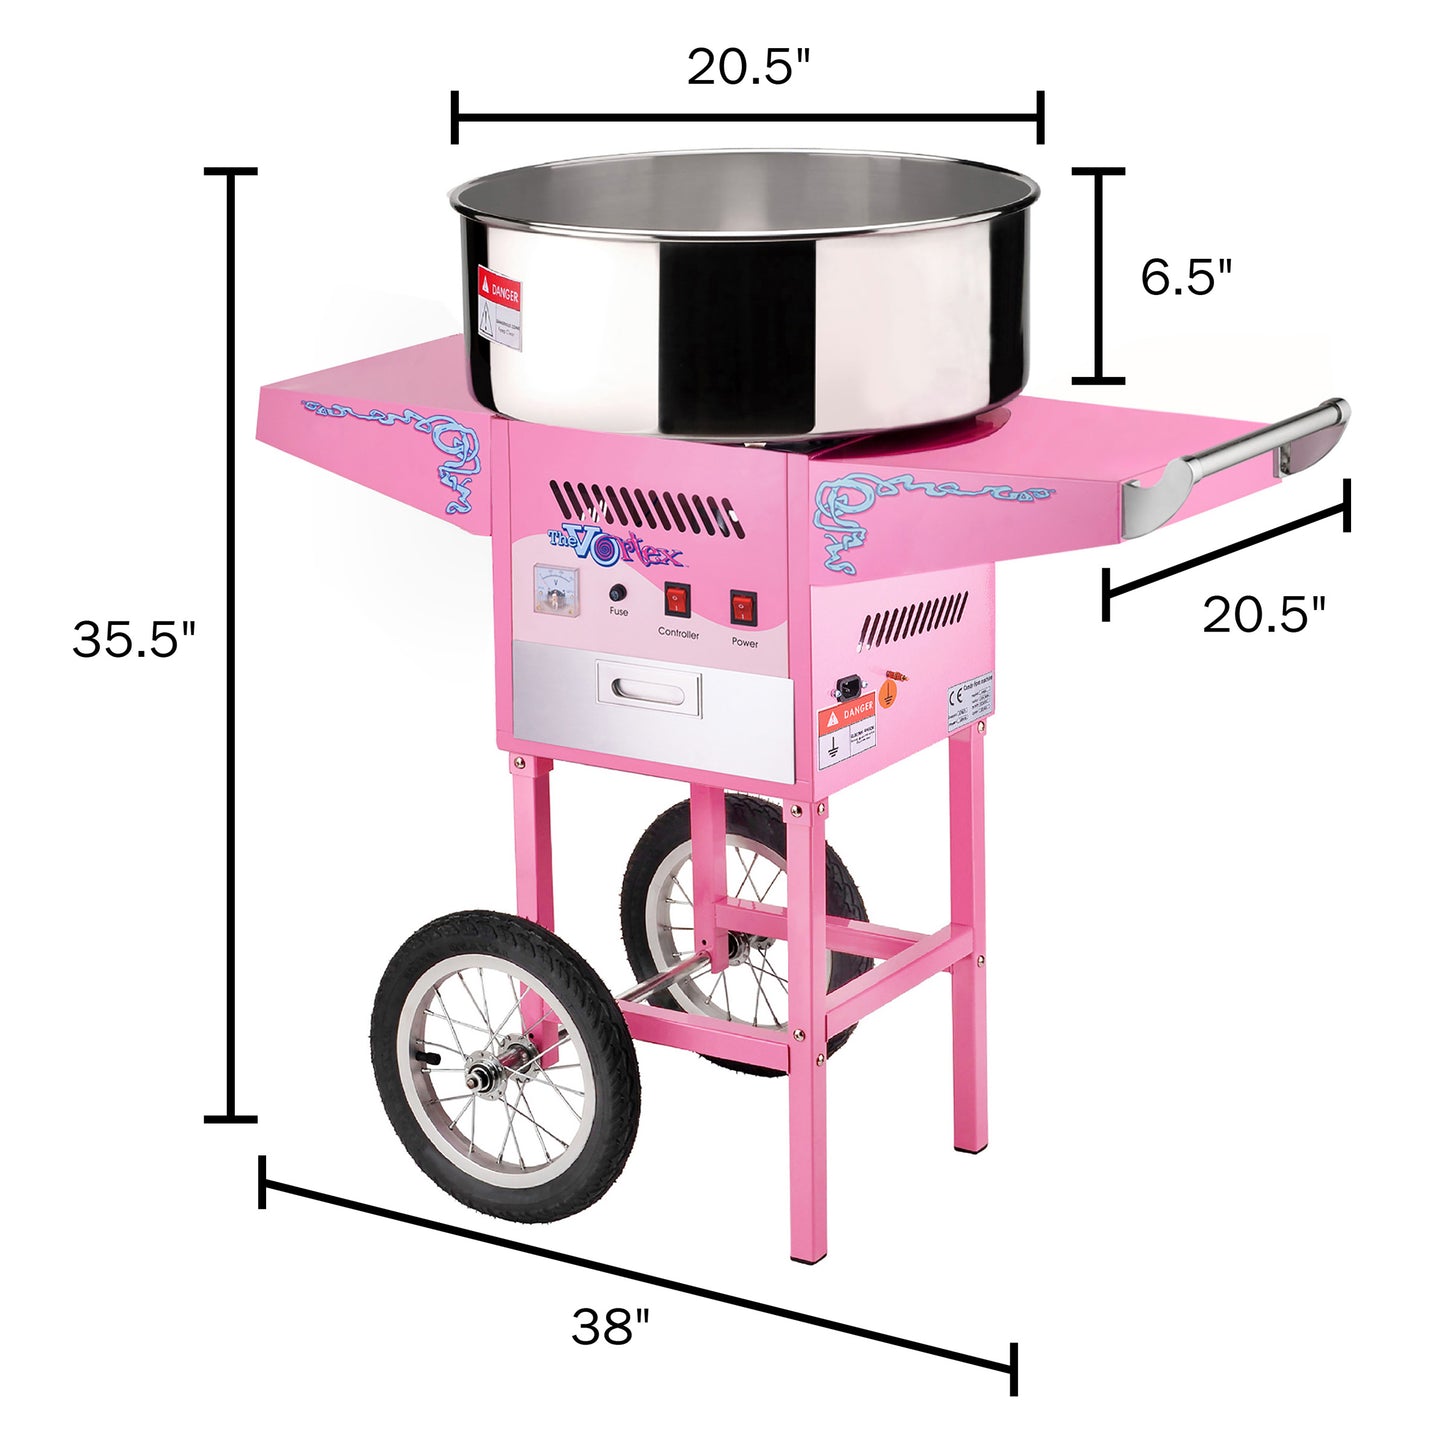 Vortex Cotton Candy Machine with Cart, Pink